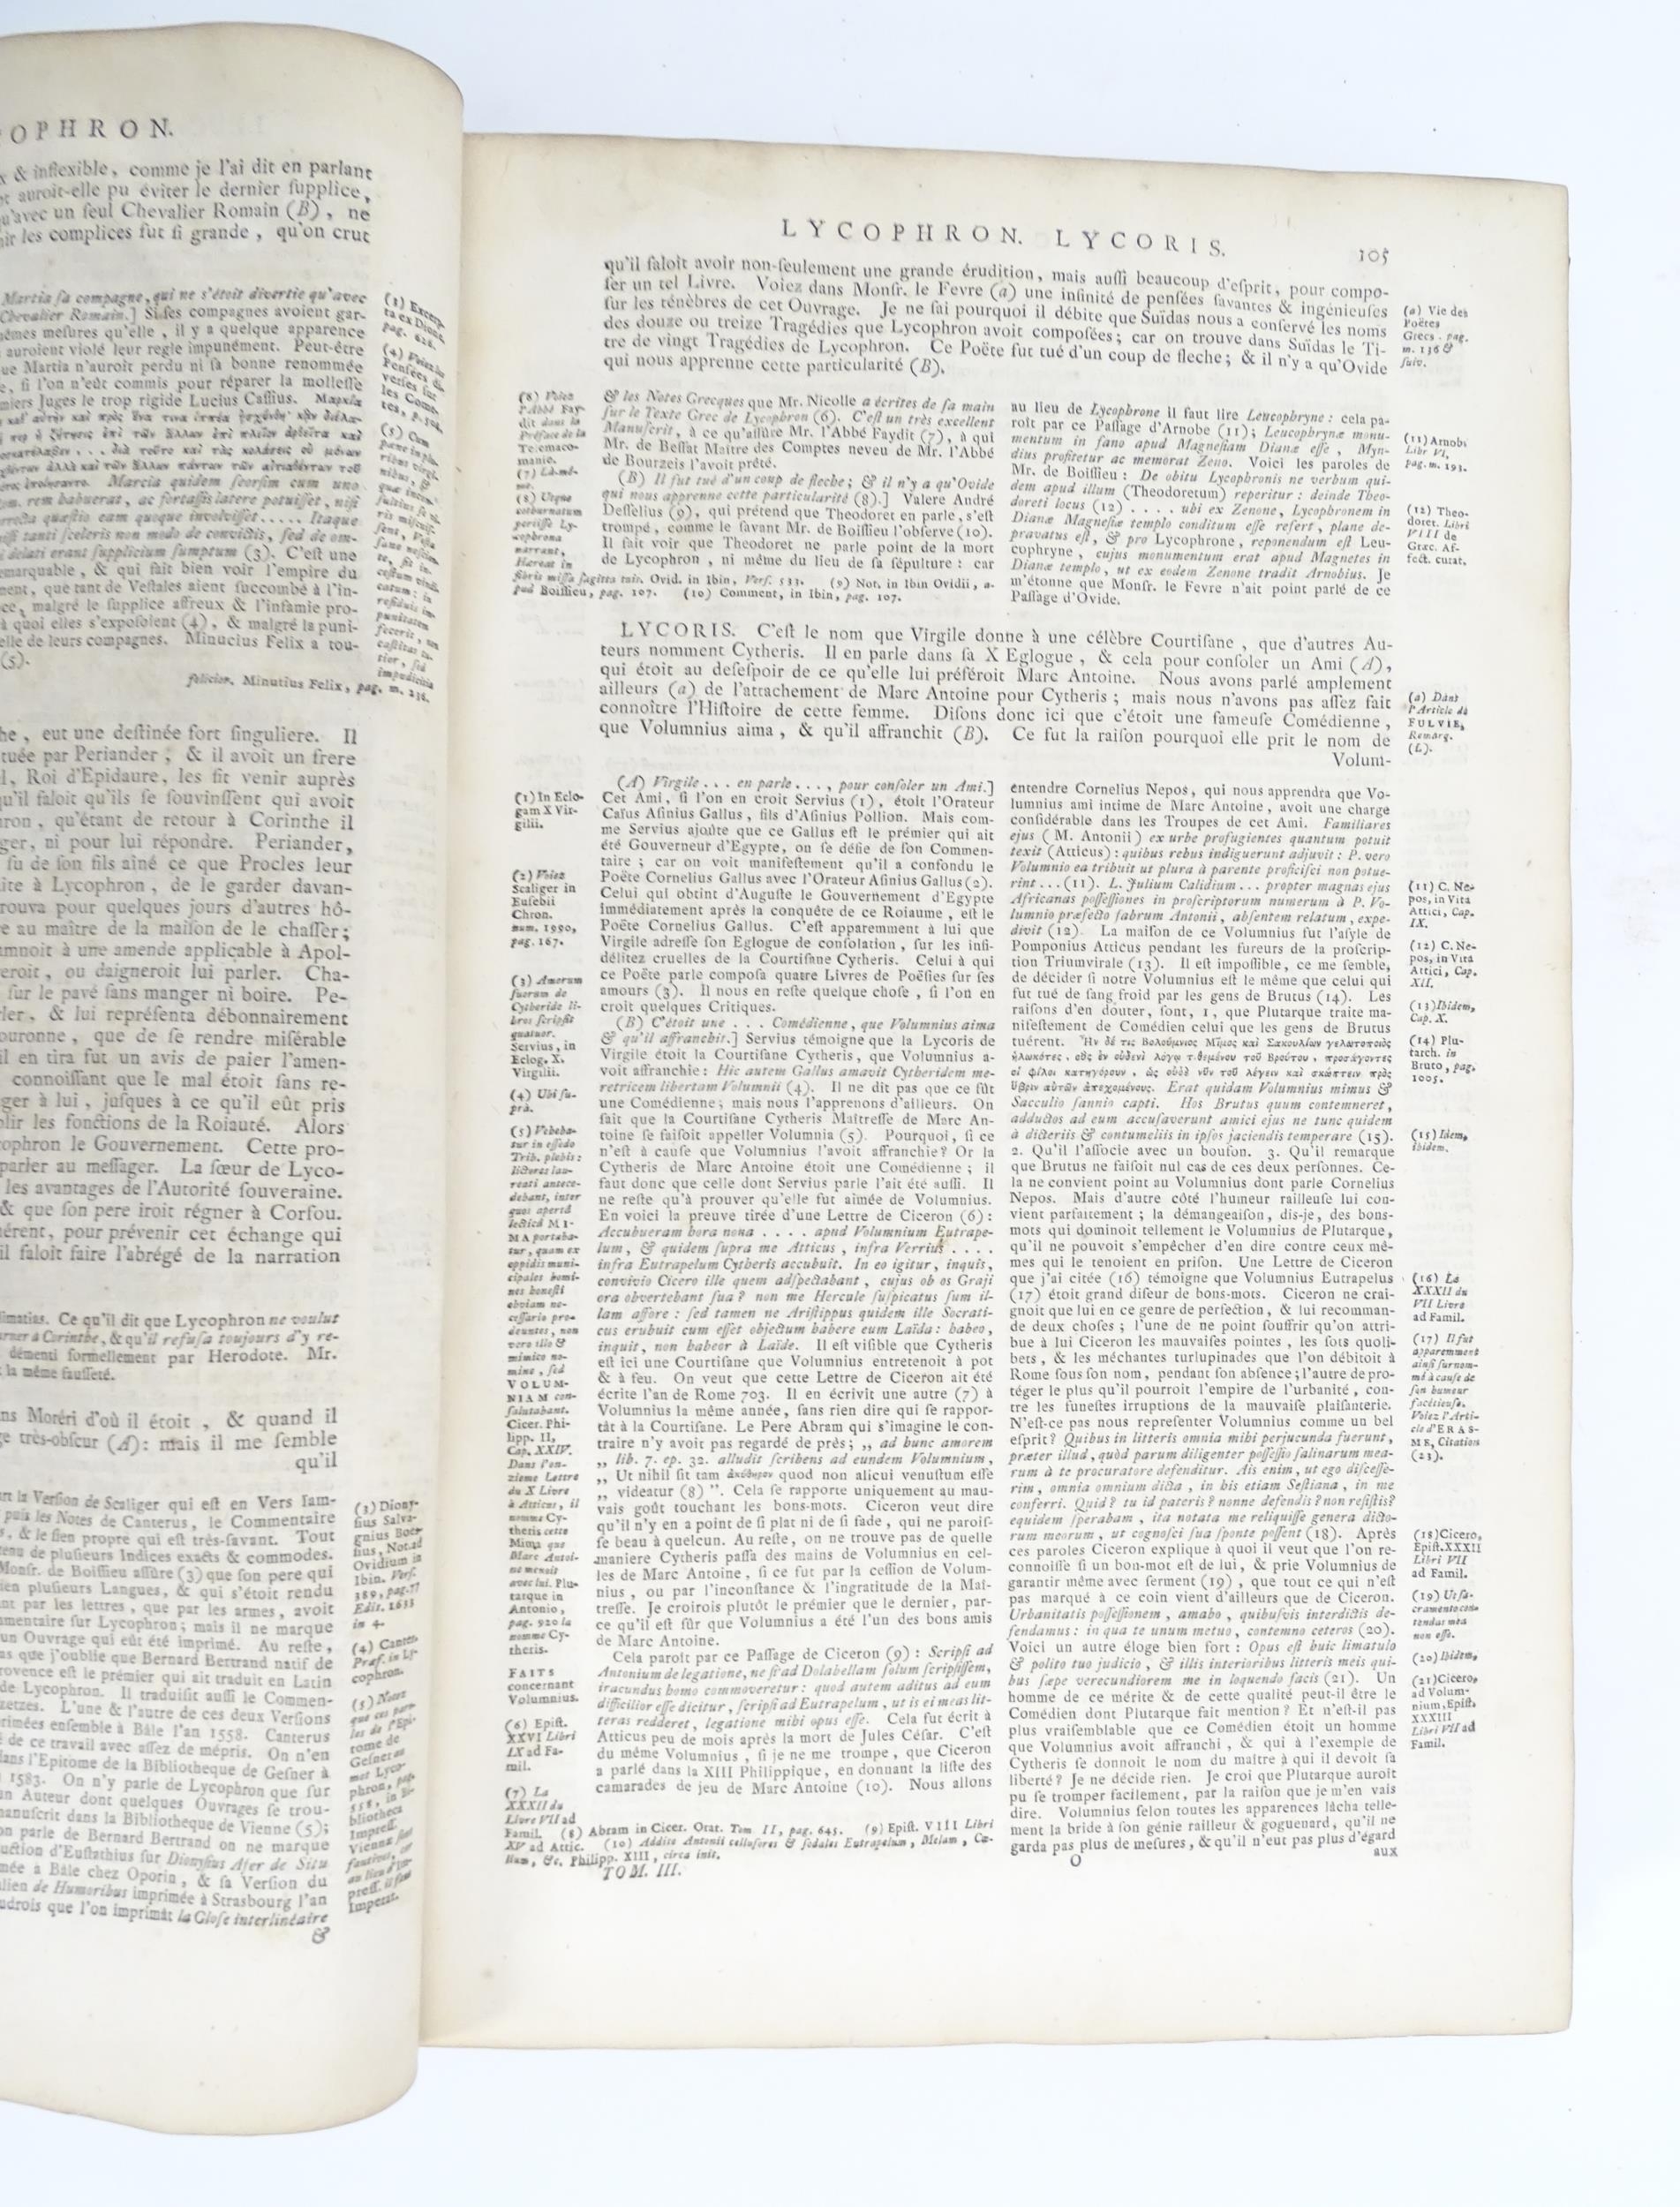 Book: Dictionaire Historique et Critique, by Mr Pierre Bayle. Published 1711 Please Note - we do not - Image 2 of 5